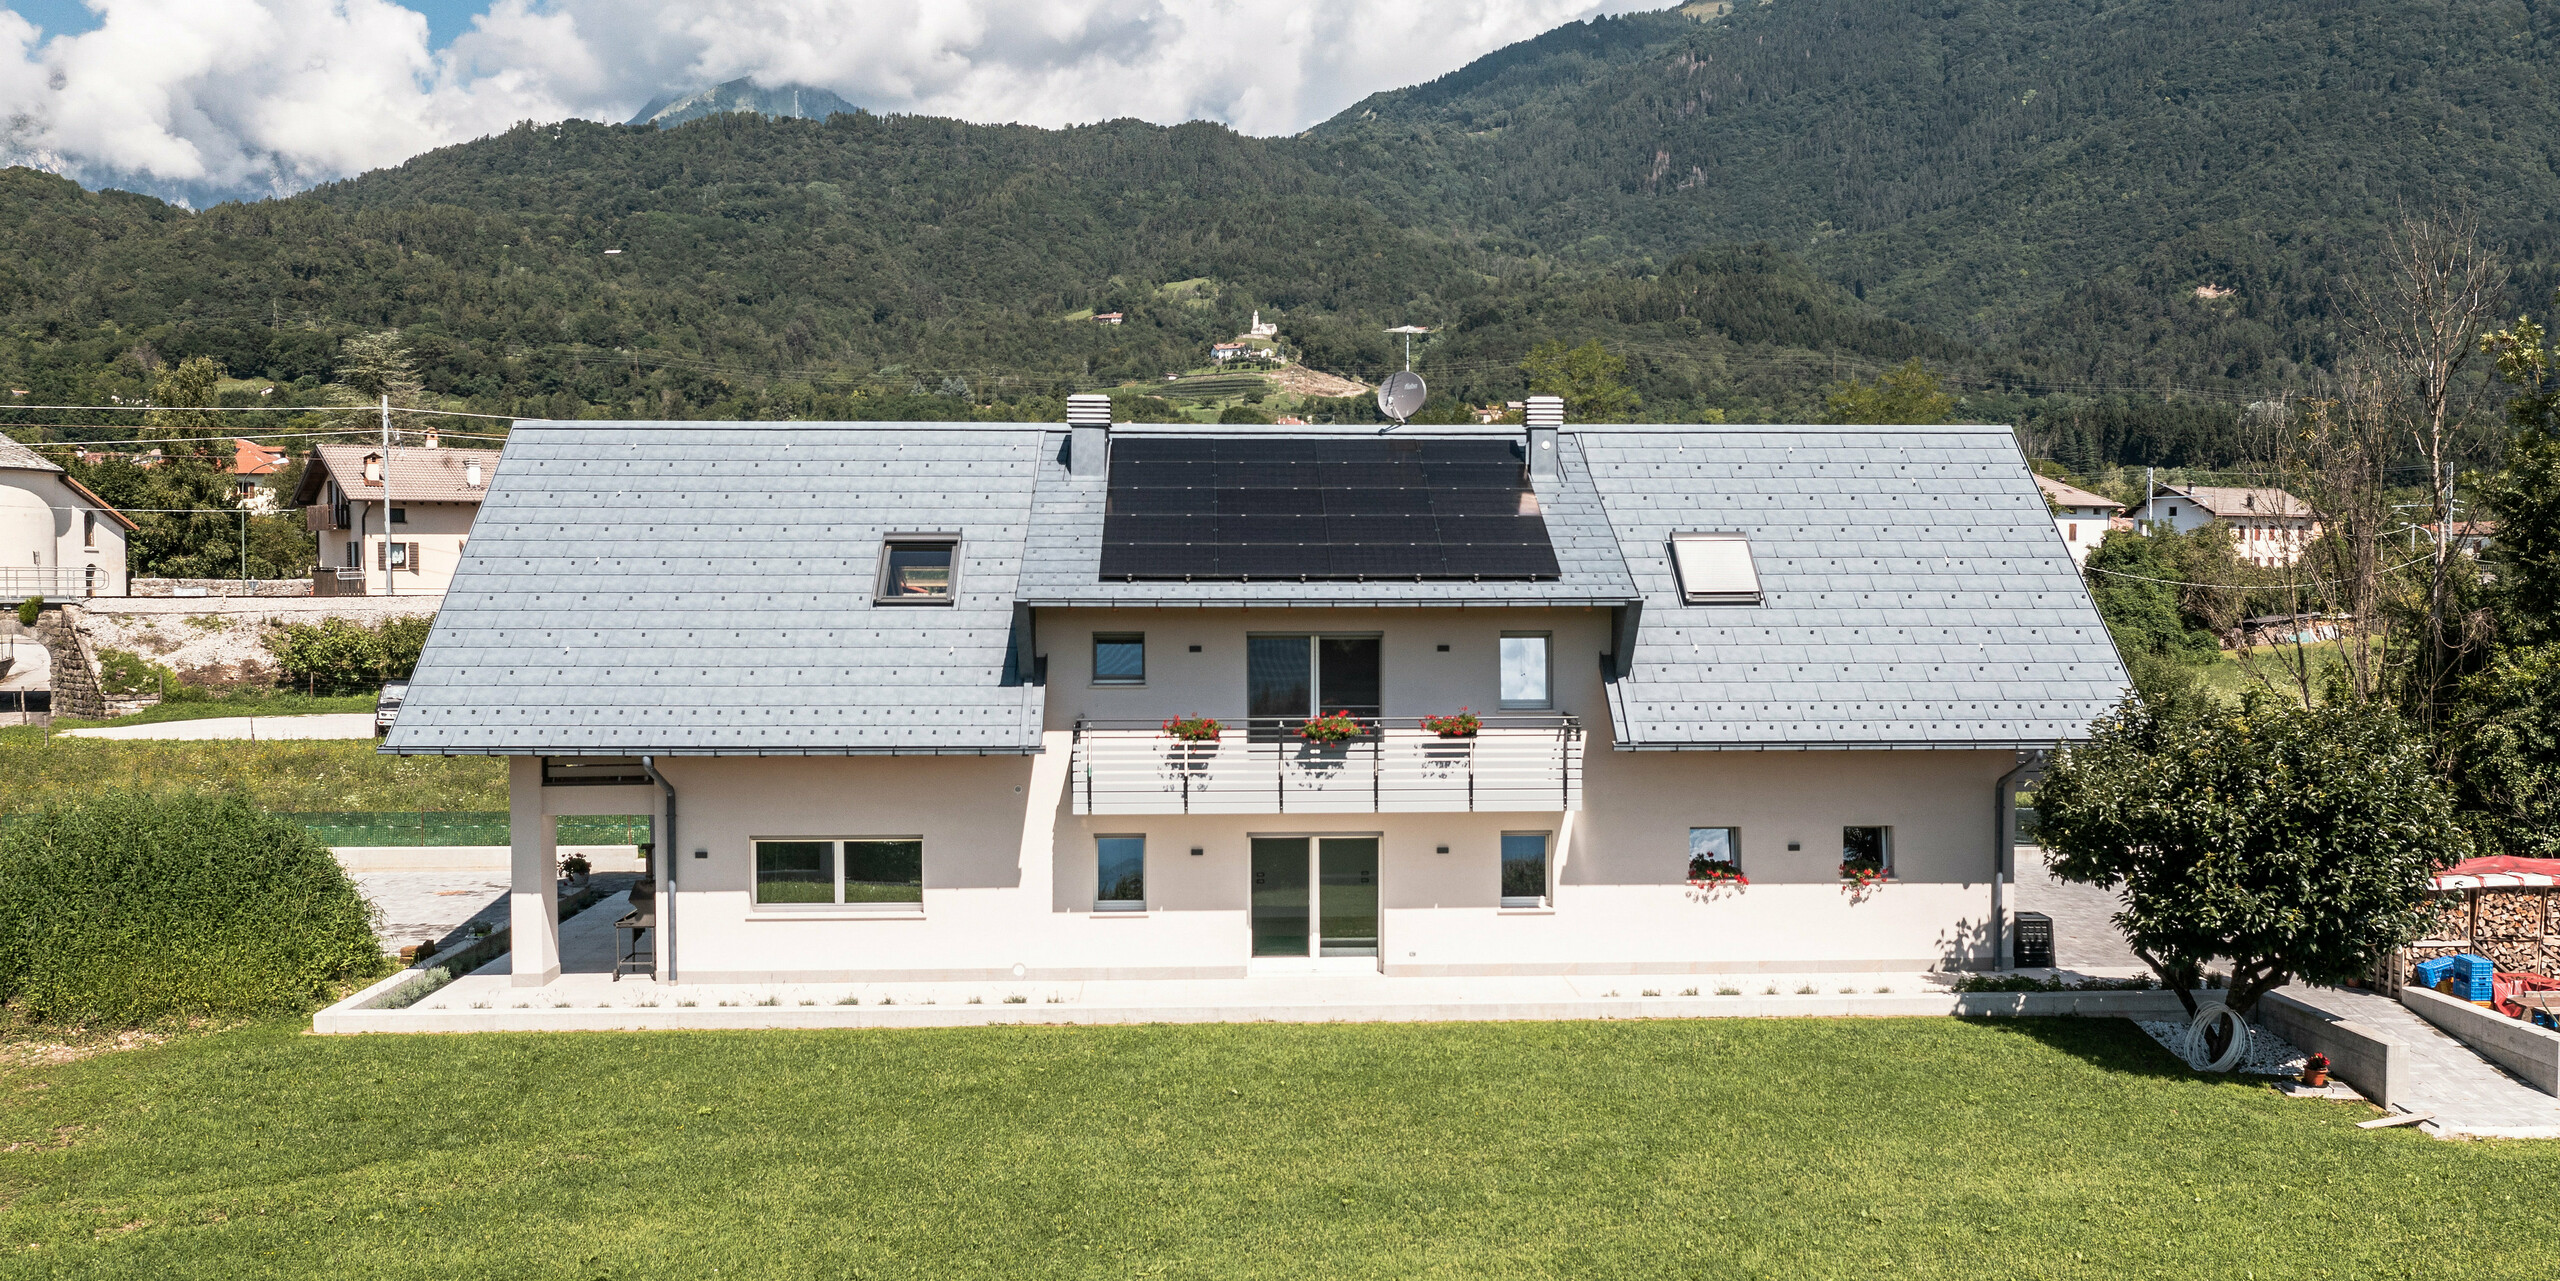 Idylický rodinný dom v Bellune, vybavený strešnými panelmi PREFA R.16 vo farbe antracit, umiestnený uprostred sviežej zelenej lúky. Čisté línie architektúry a moderná strecha vytvárajú nádherný kontrast k tradičným vidieckym domom v pozadí a okolitej horskej krajine.